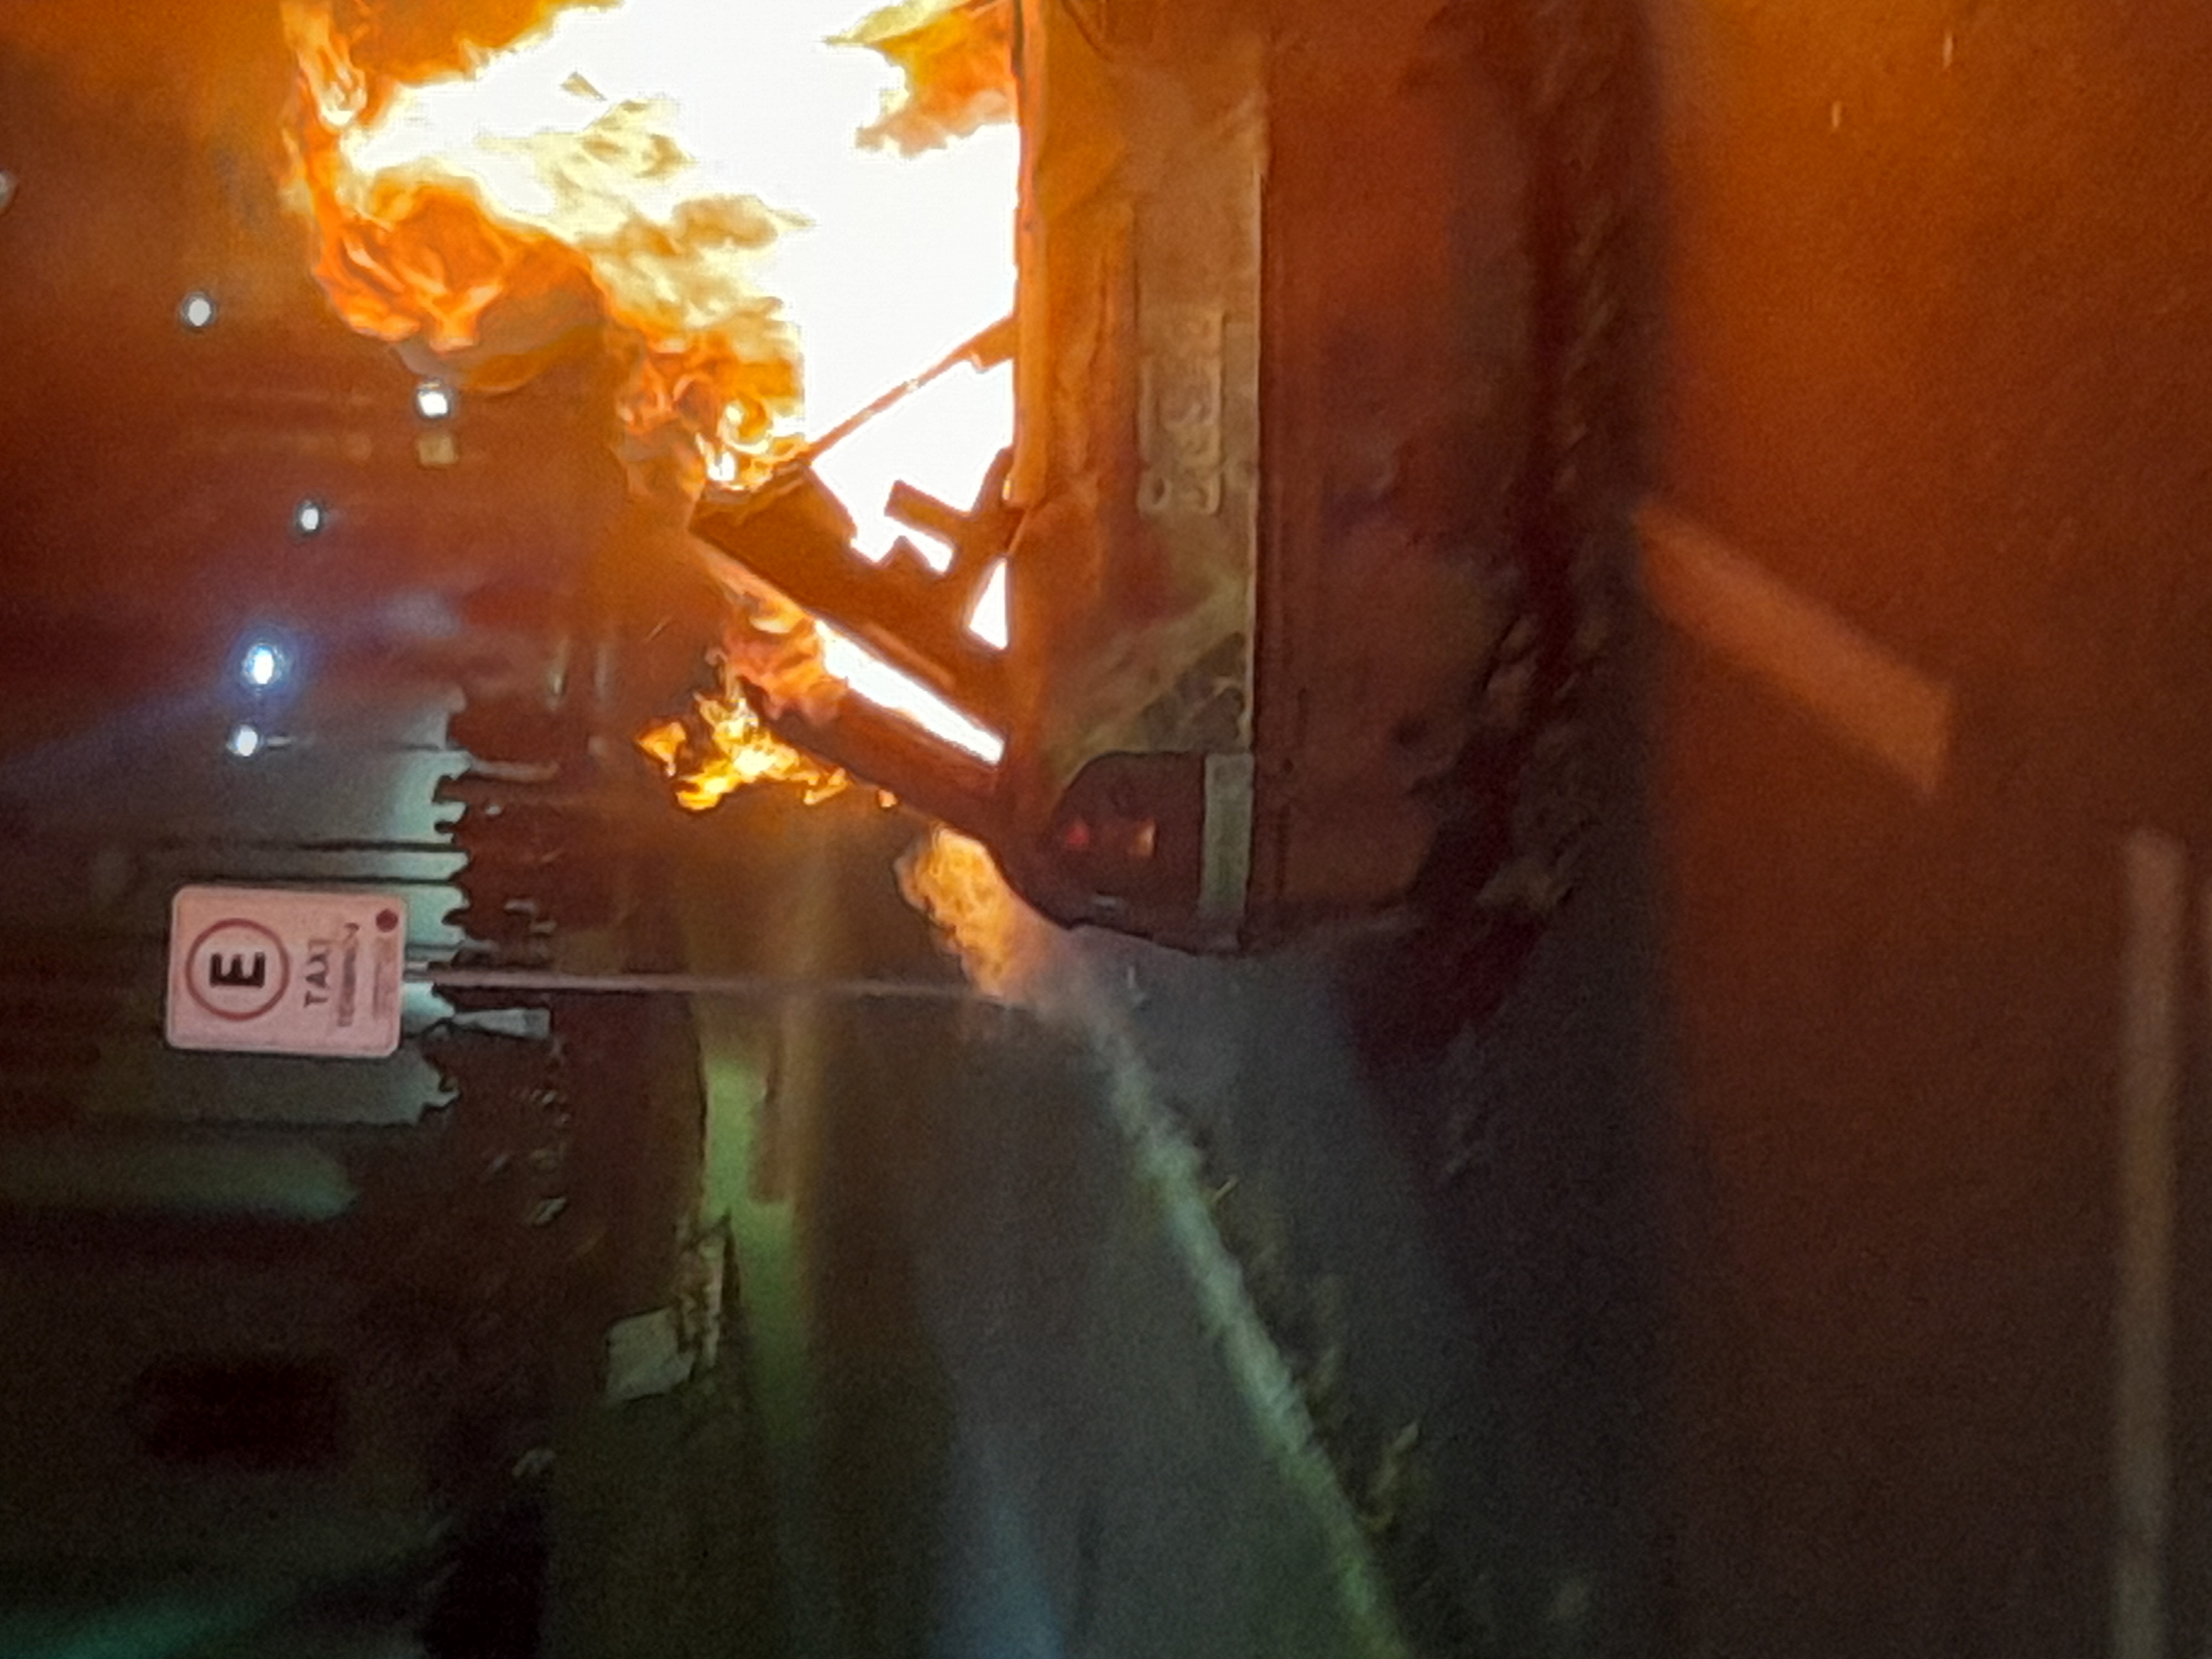 Foto de arquivo mostra incêndio em veículo 